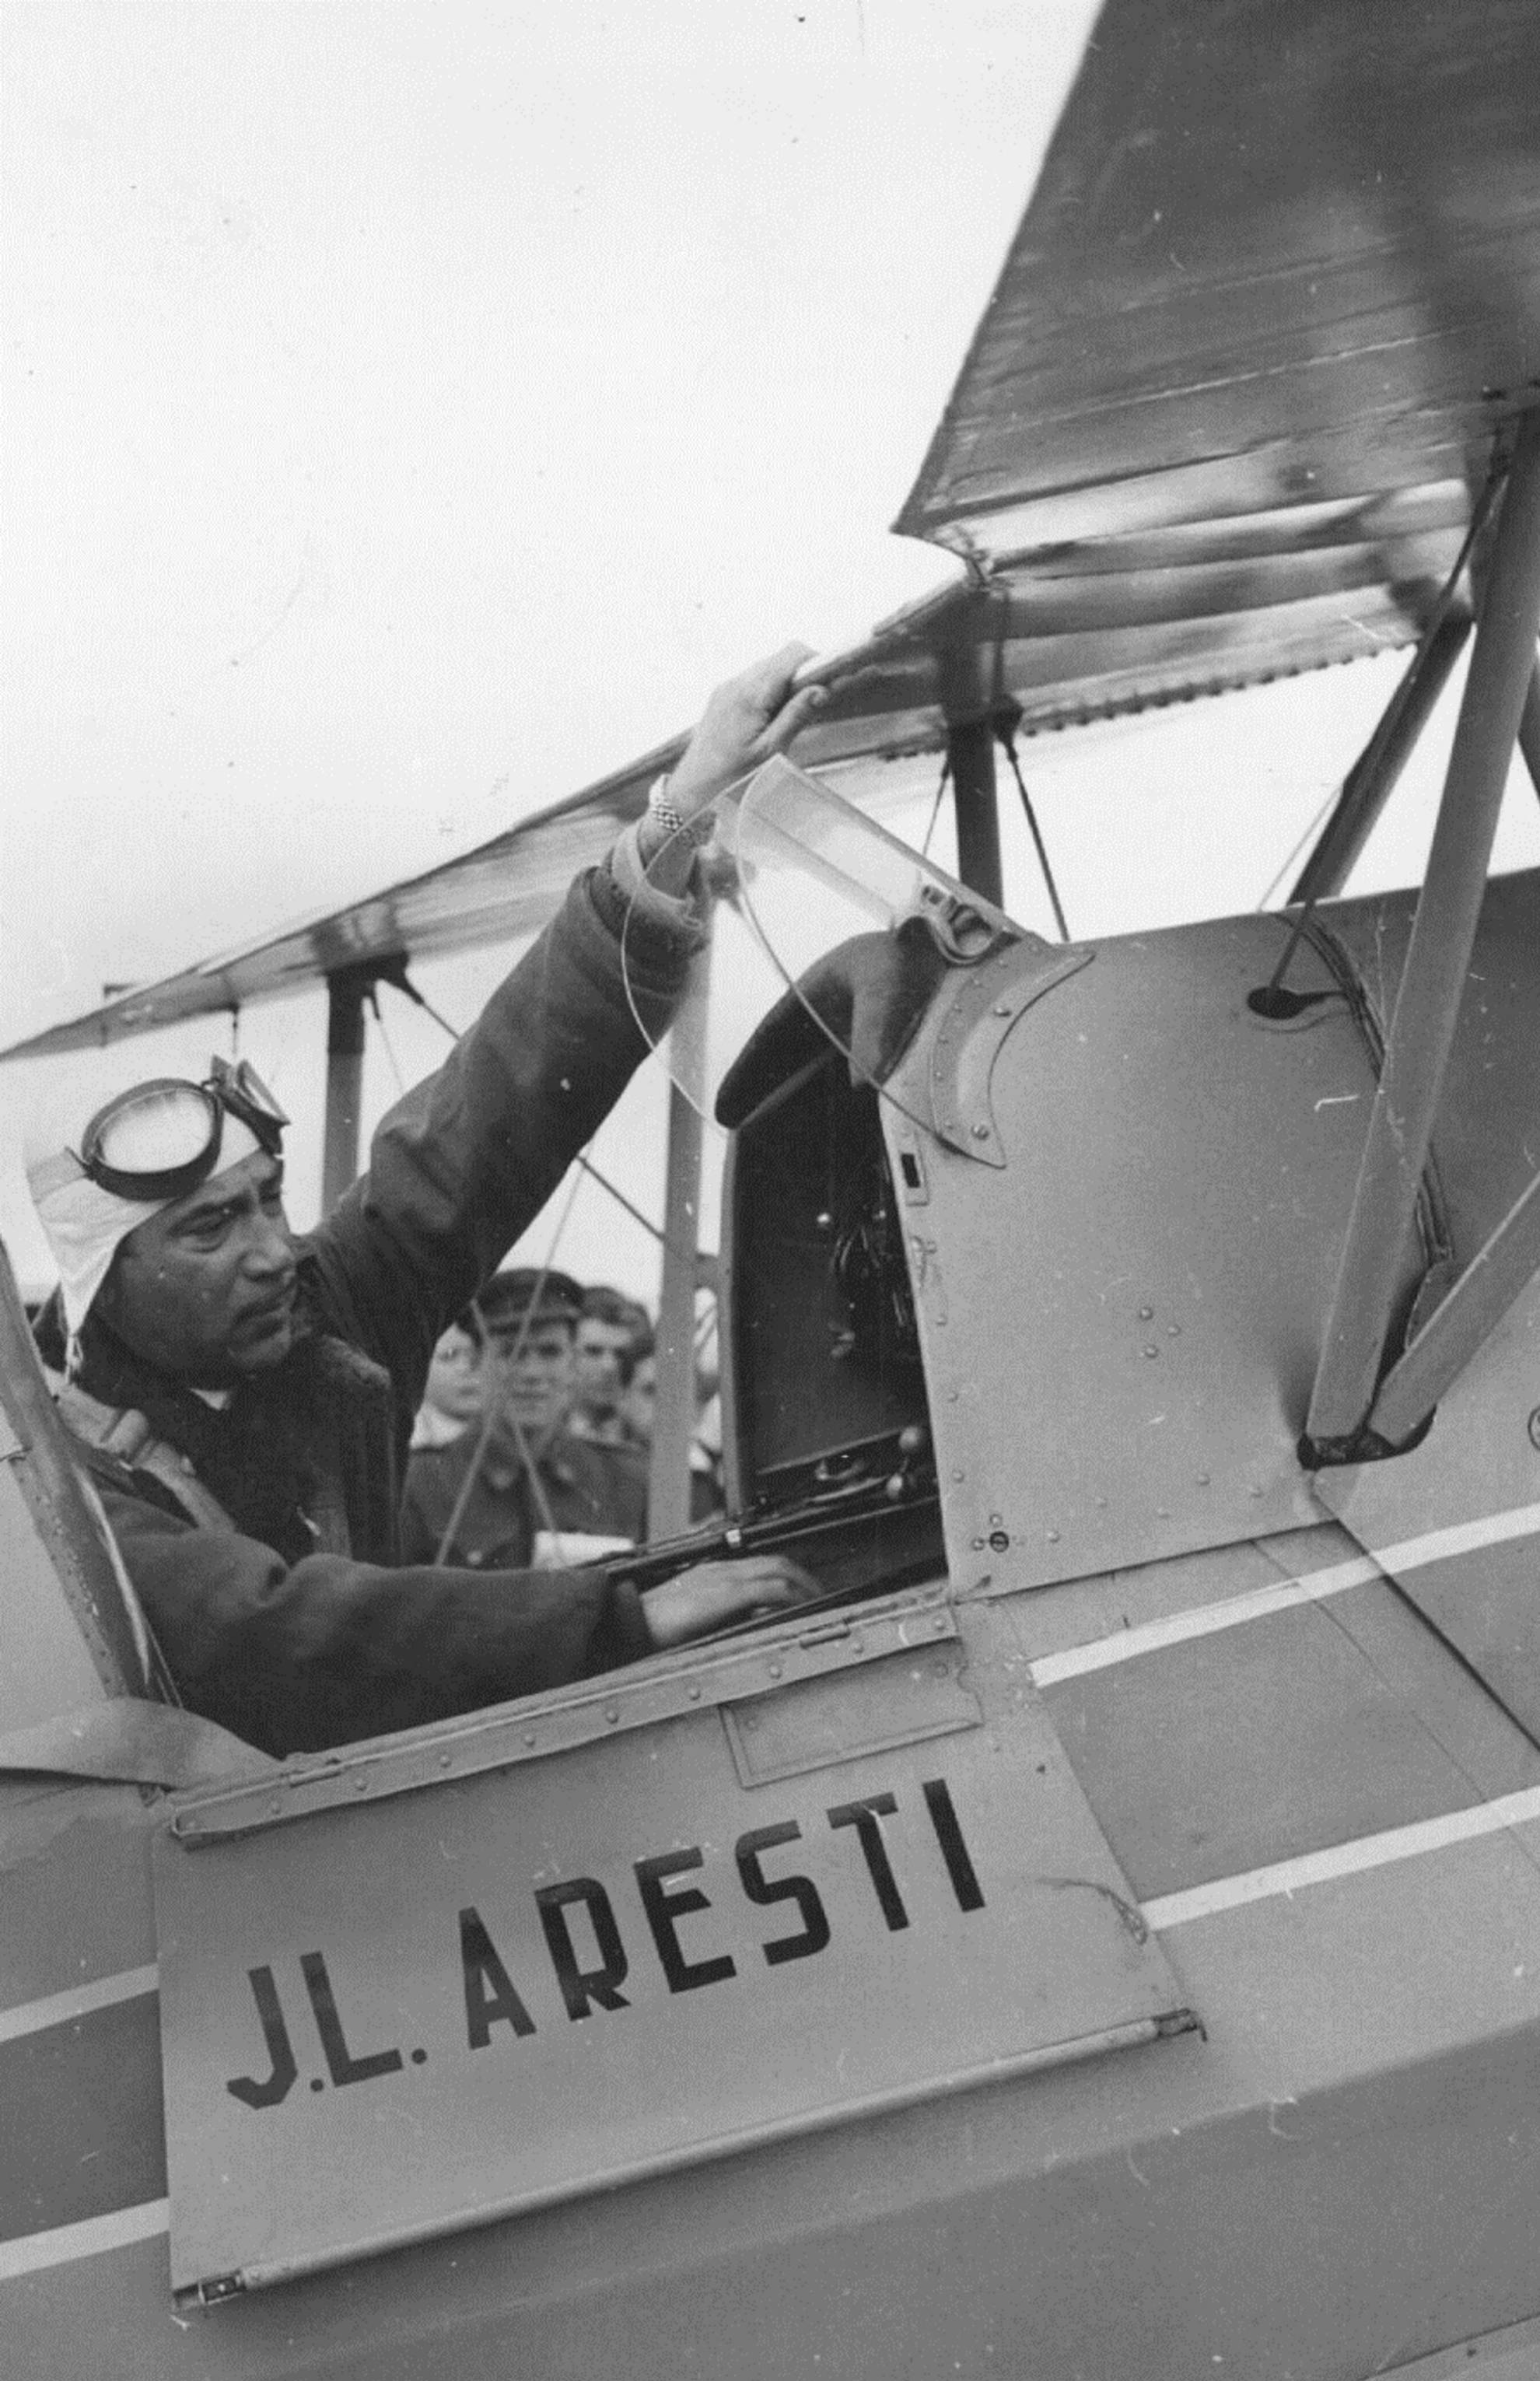 Luis Aresti, el pionero español
en acrobacias aéreas